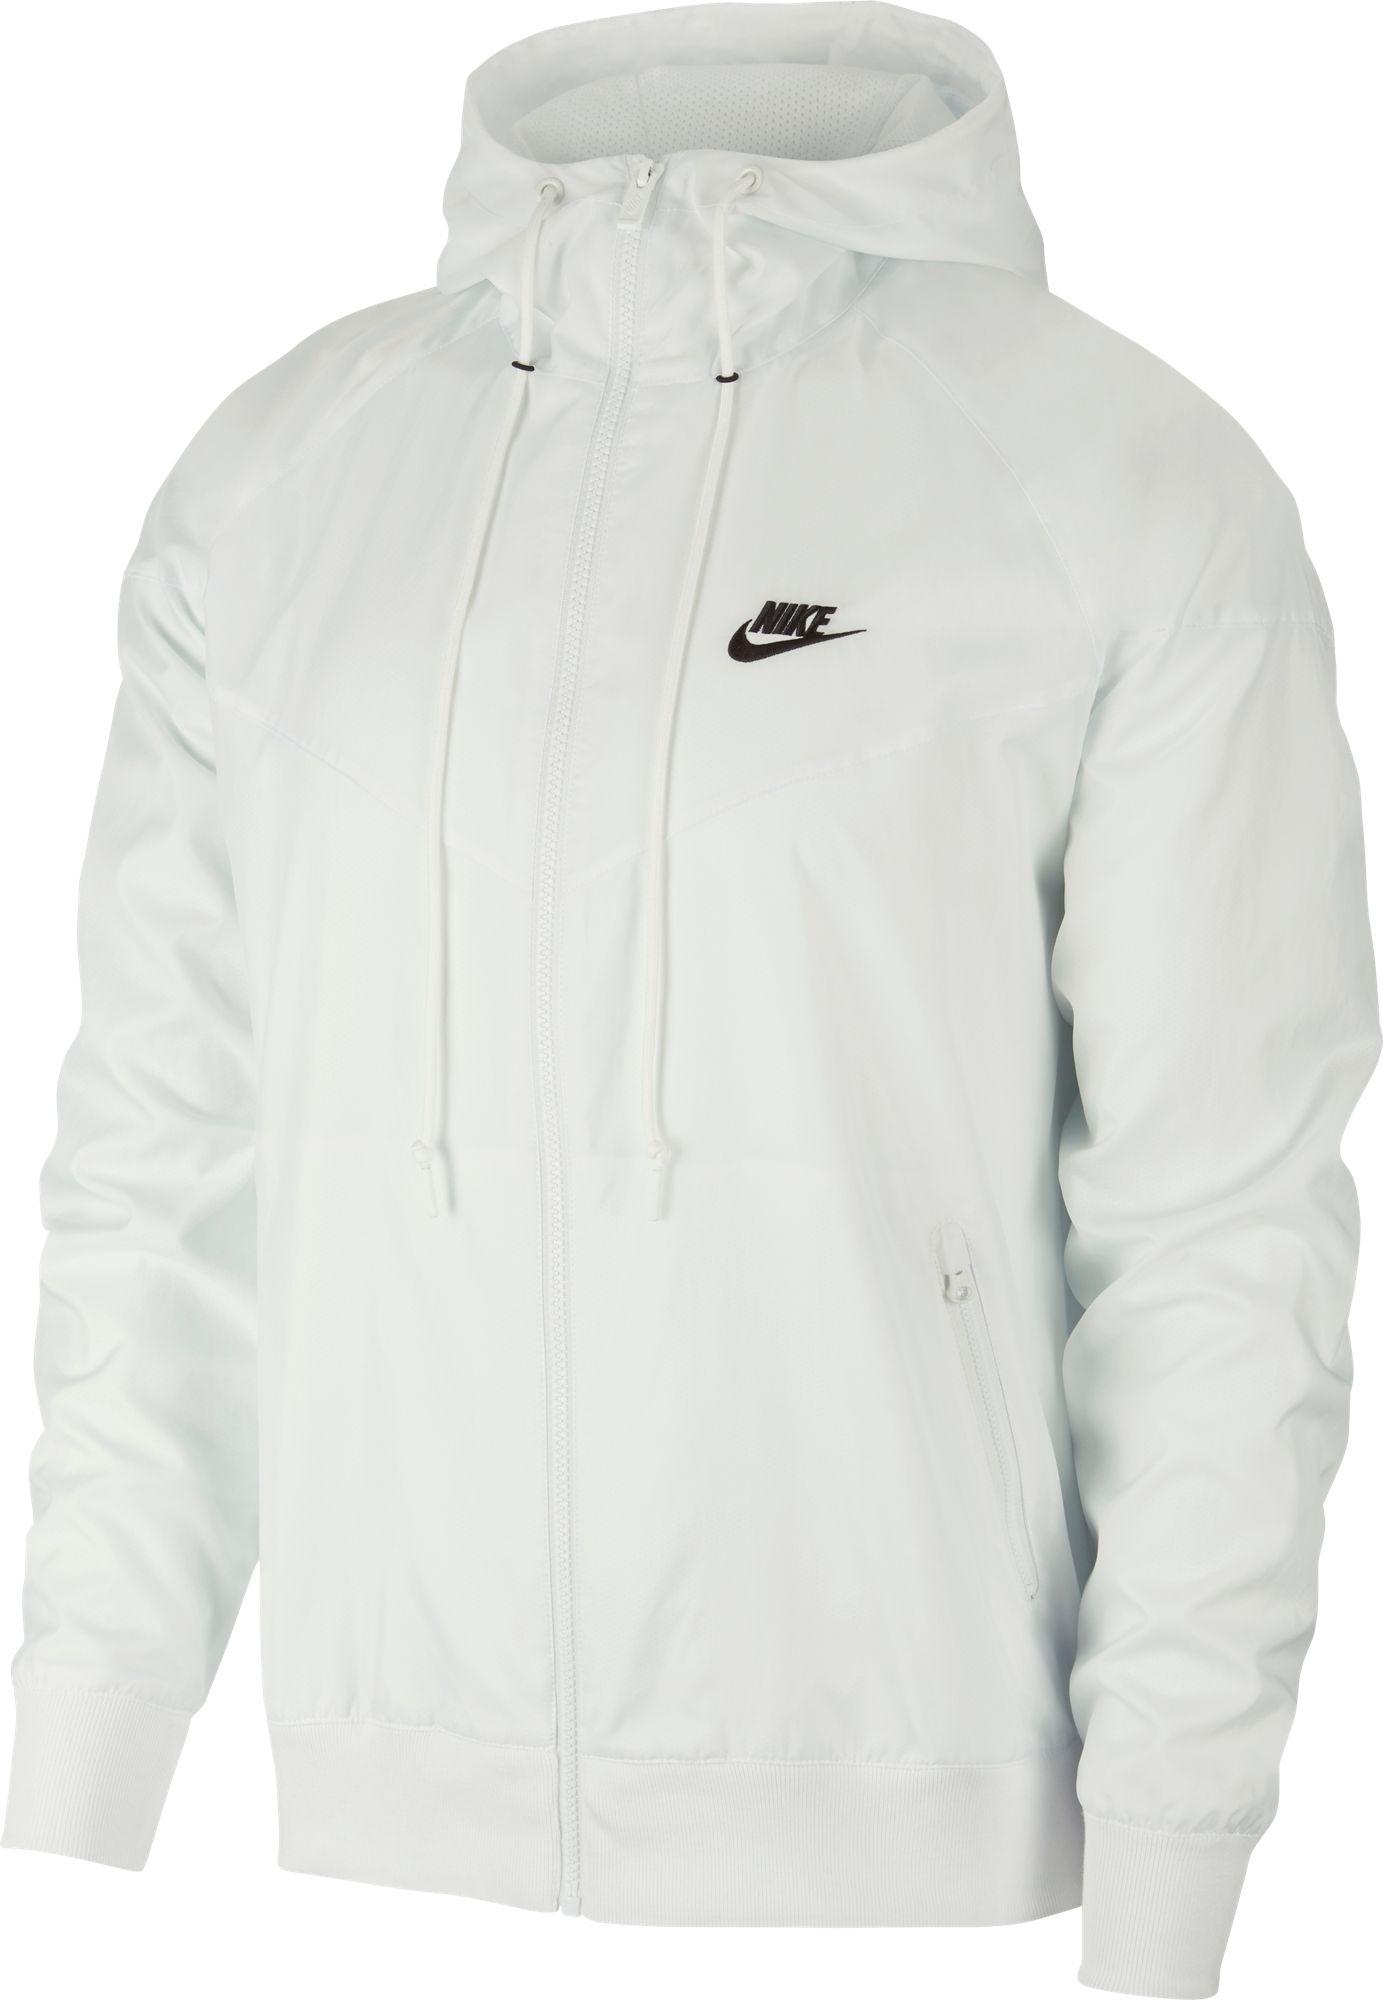 Nike Sportswear 2019 Hooded Windrunner Jacket in White for Men - Lyst